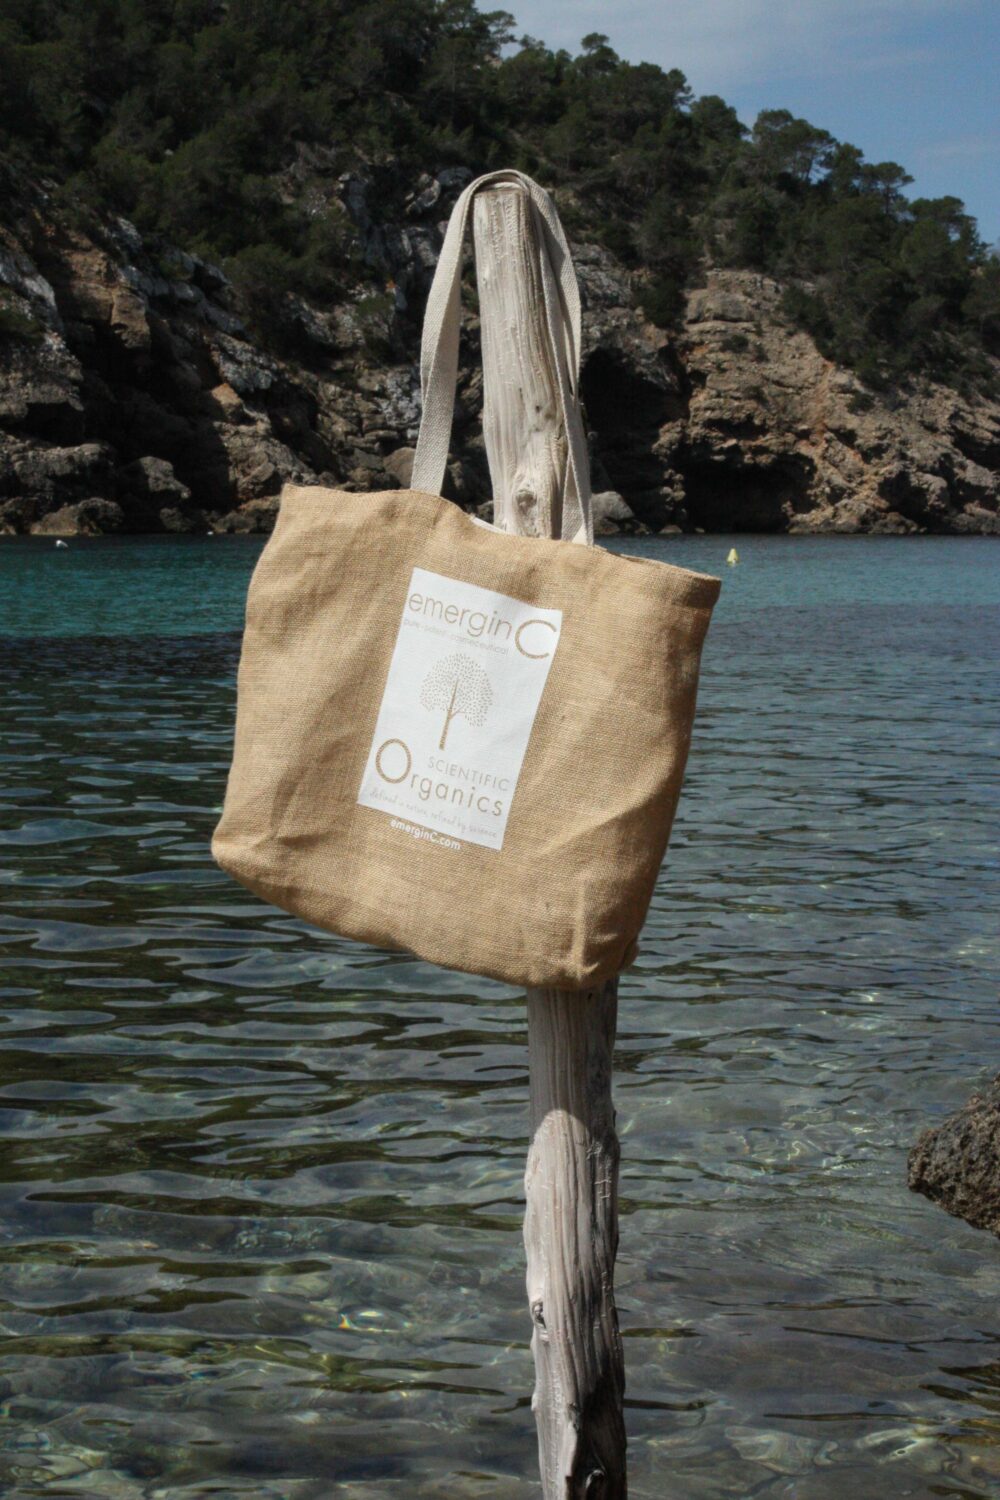 emerginC Scientific Organics tas hangt aan houten paal in mooie baai op Ibiza